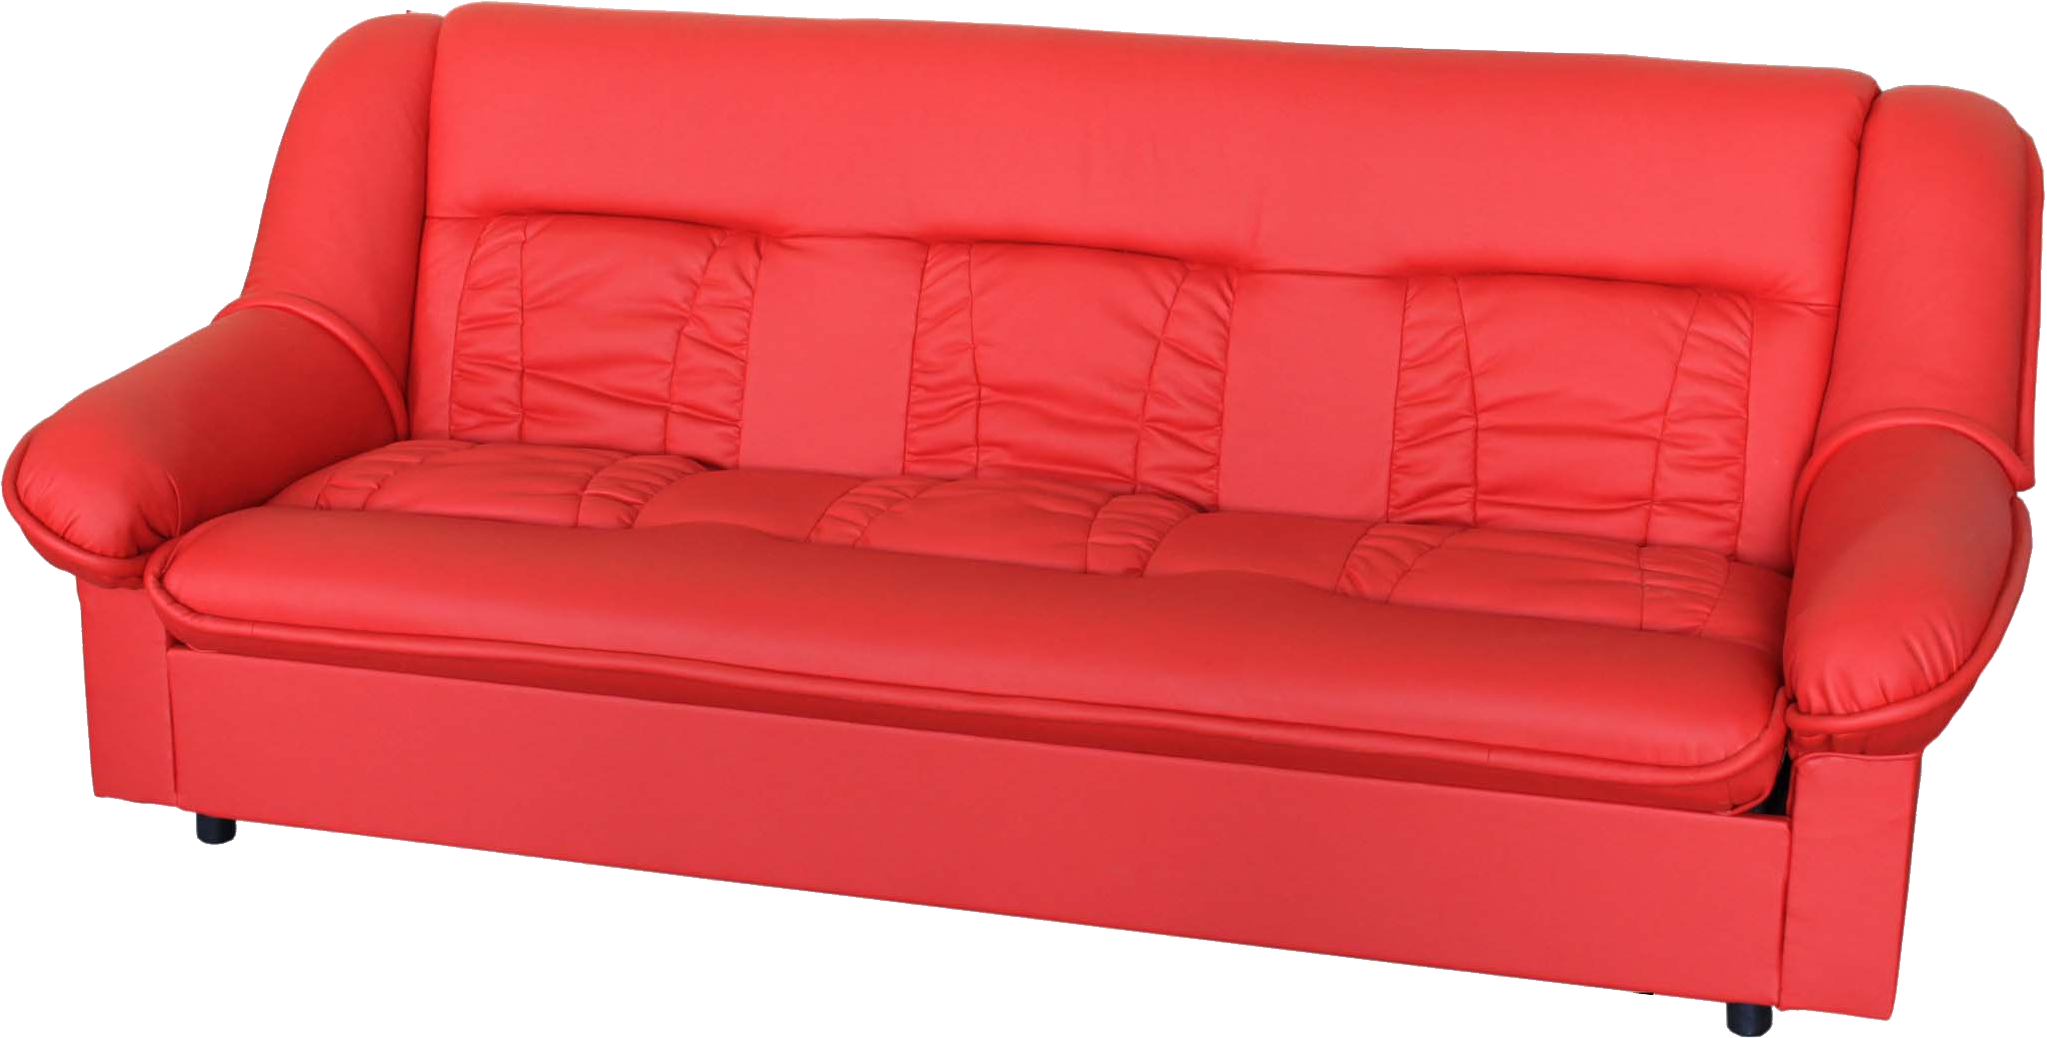 Canapé rouge